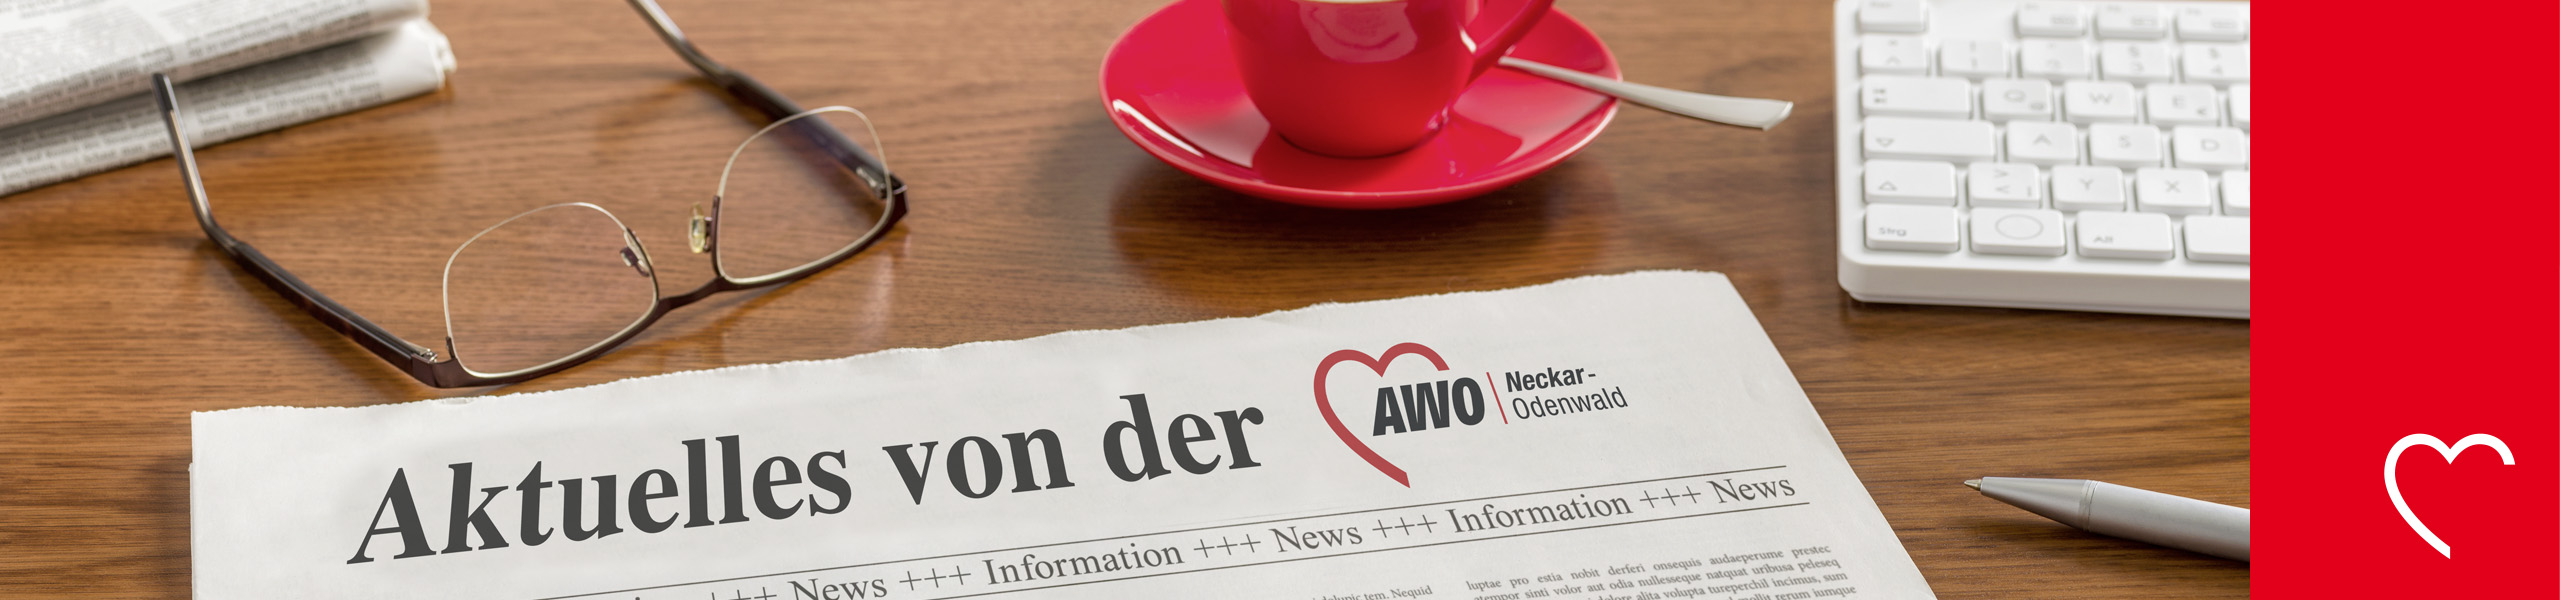 AWO Neckar-Odenwald gGmbH - Gabriele Teichmann erneut für AWO Neckar-Odenwald in den Vorstand von AWO International gewählt 